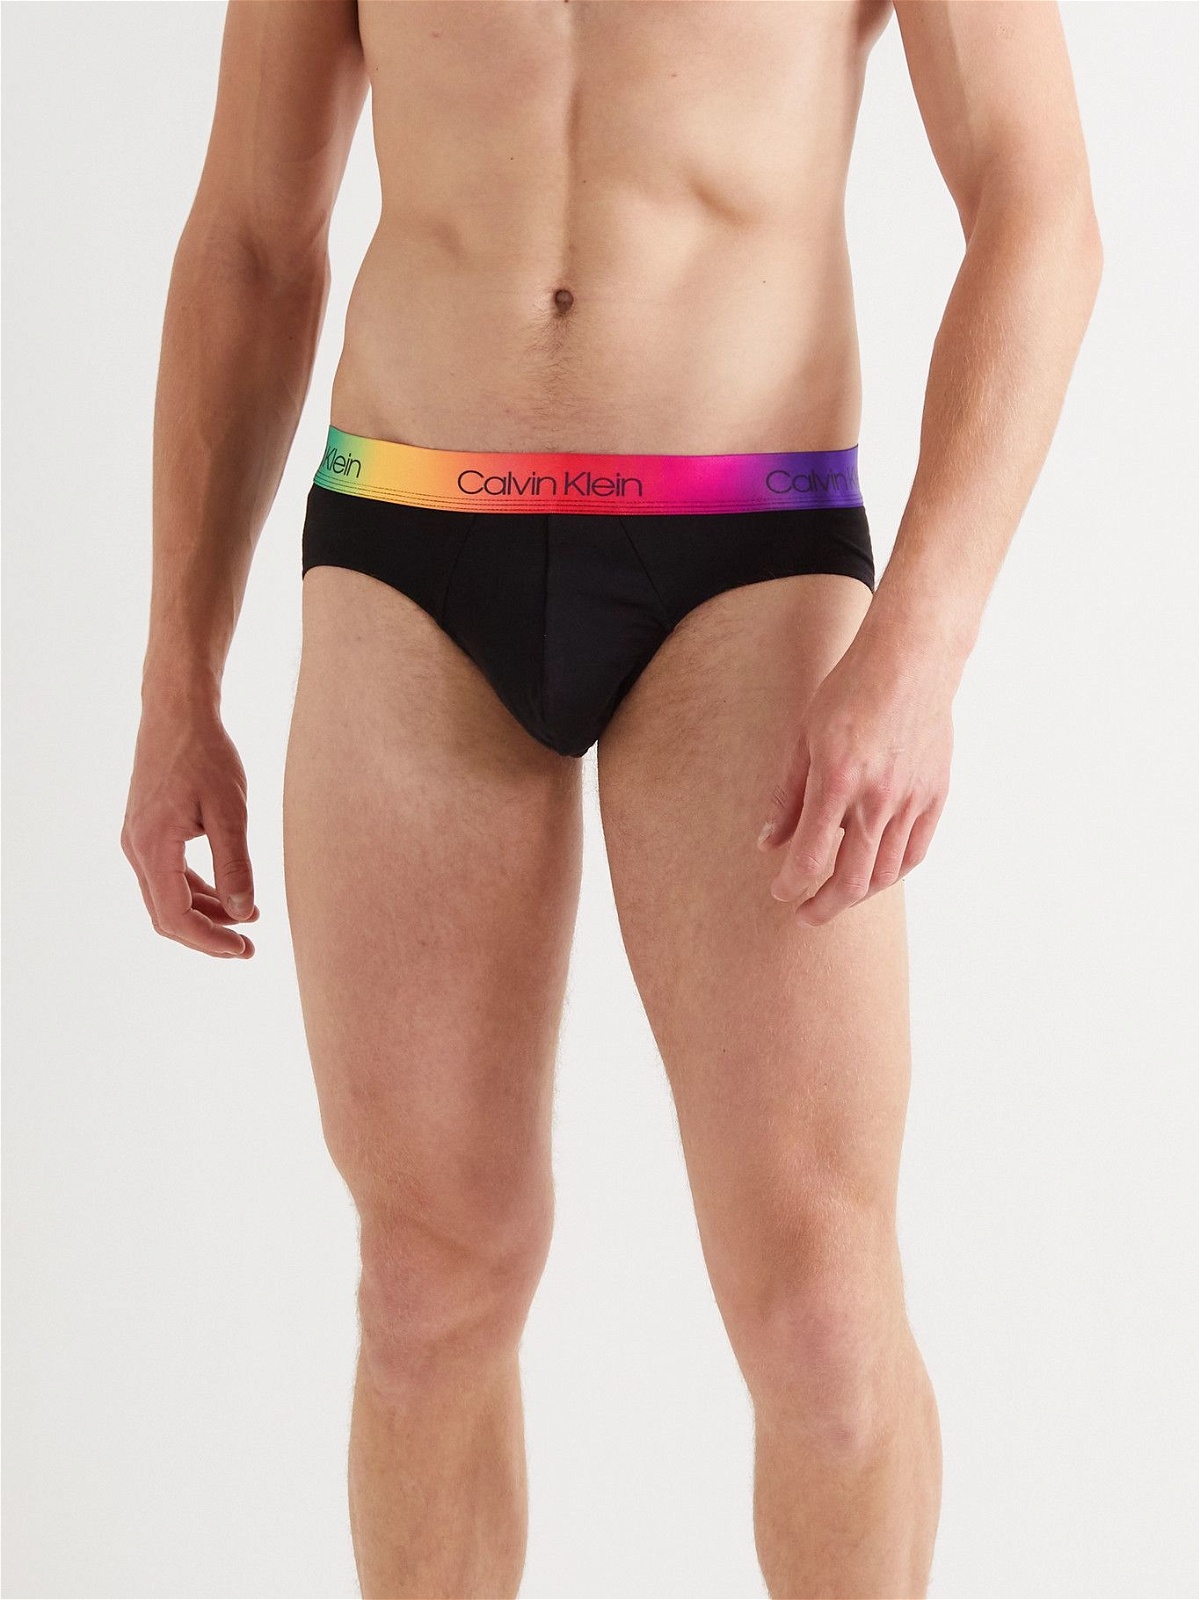 CALVIN KLEIN UNDERWEAR - The Pride Edit Stretch-Cotton Briefs - Black  Calvin Klein Underwear